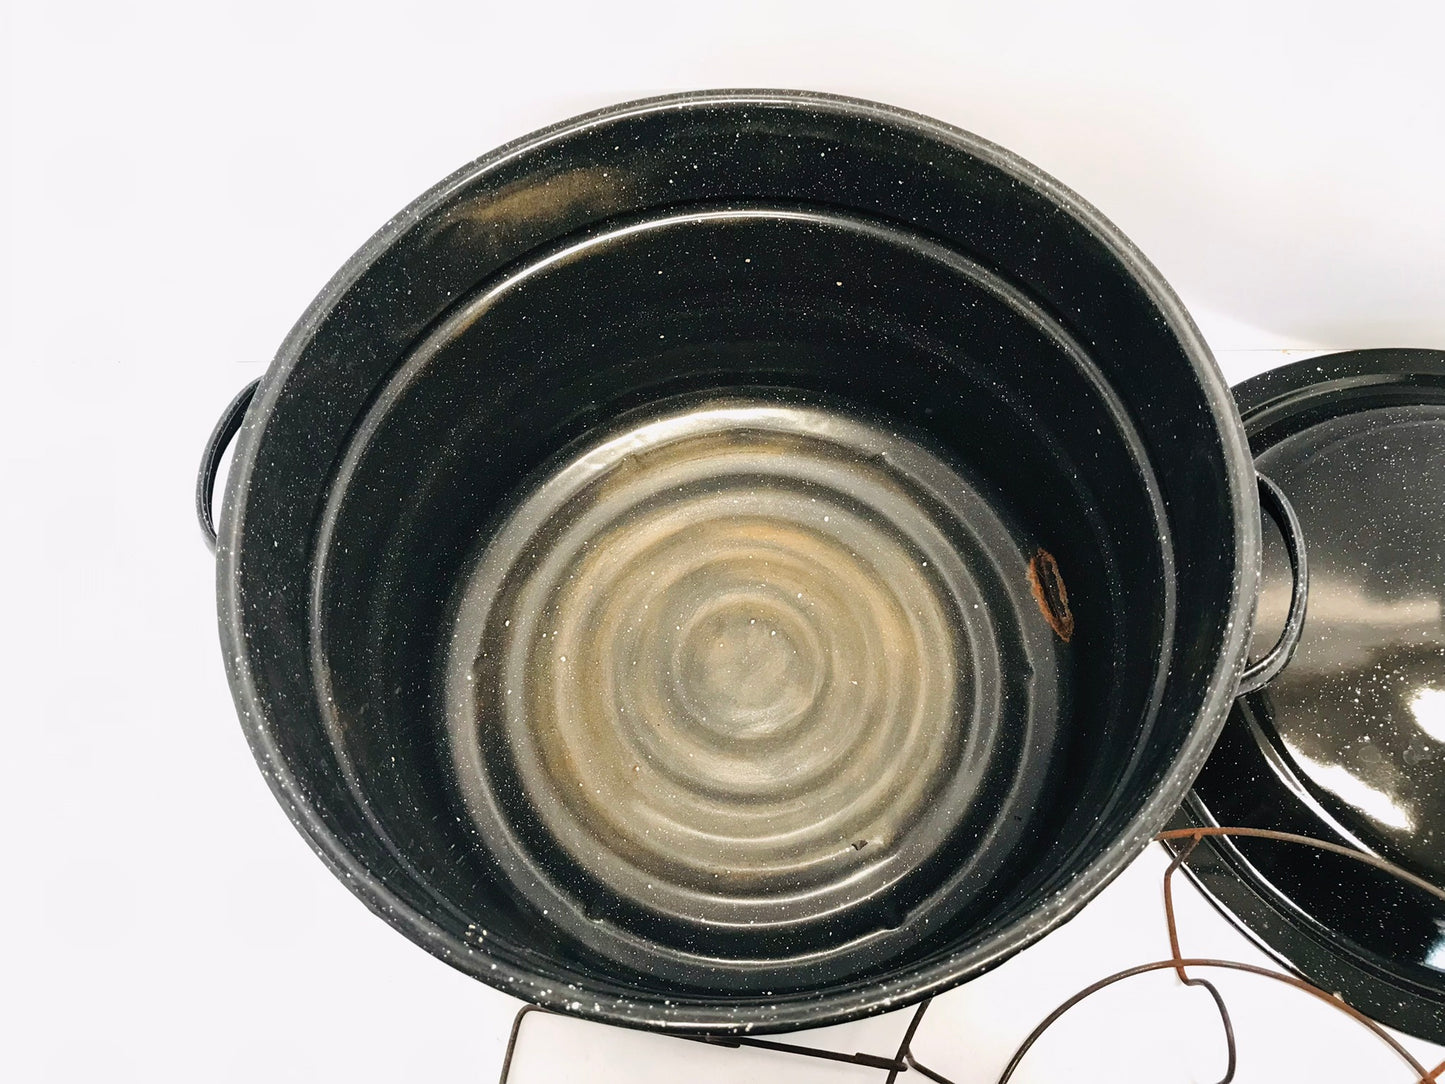 Canning Pot Enamelware Large 21 Quart Vintage